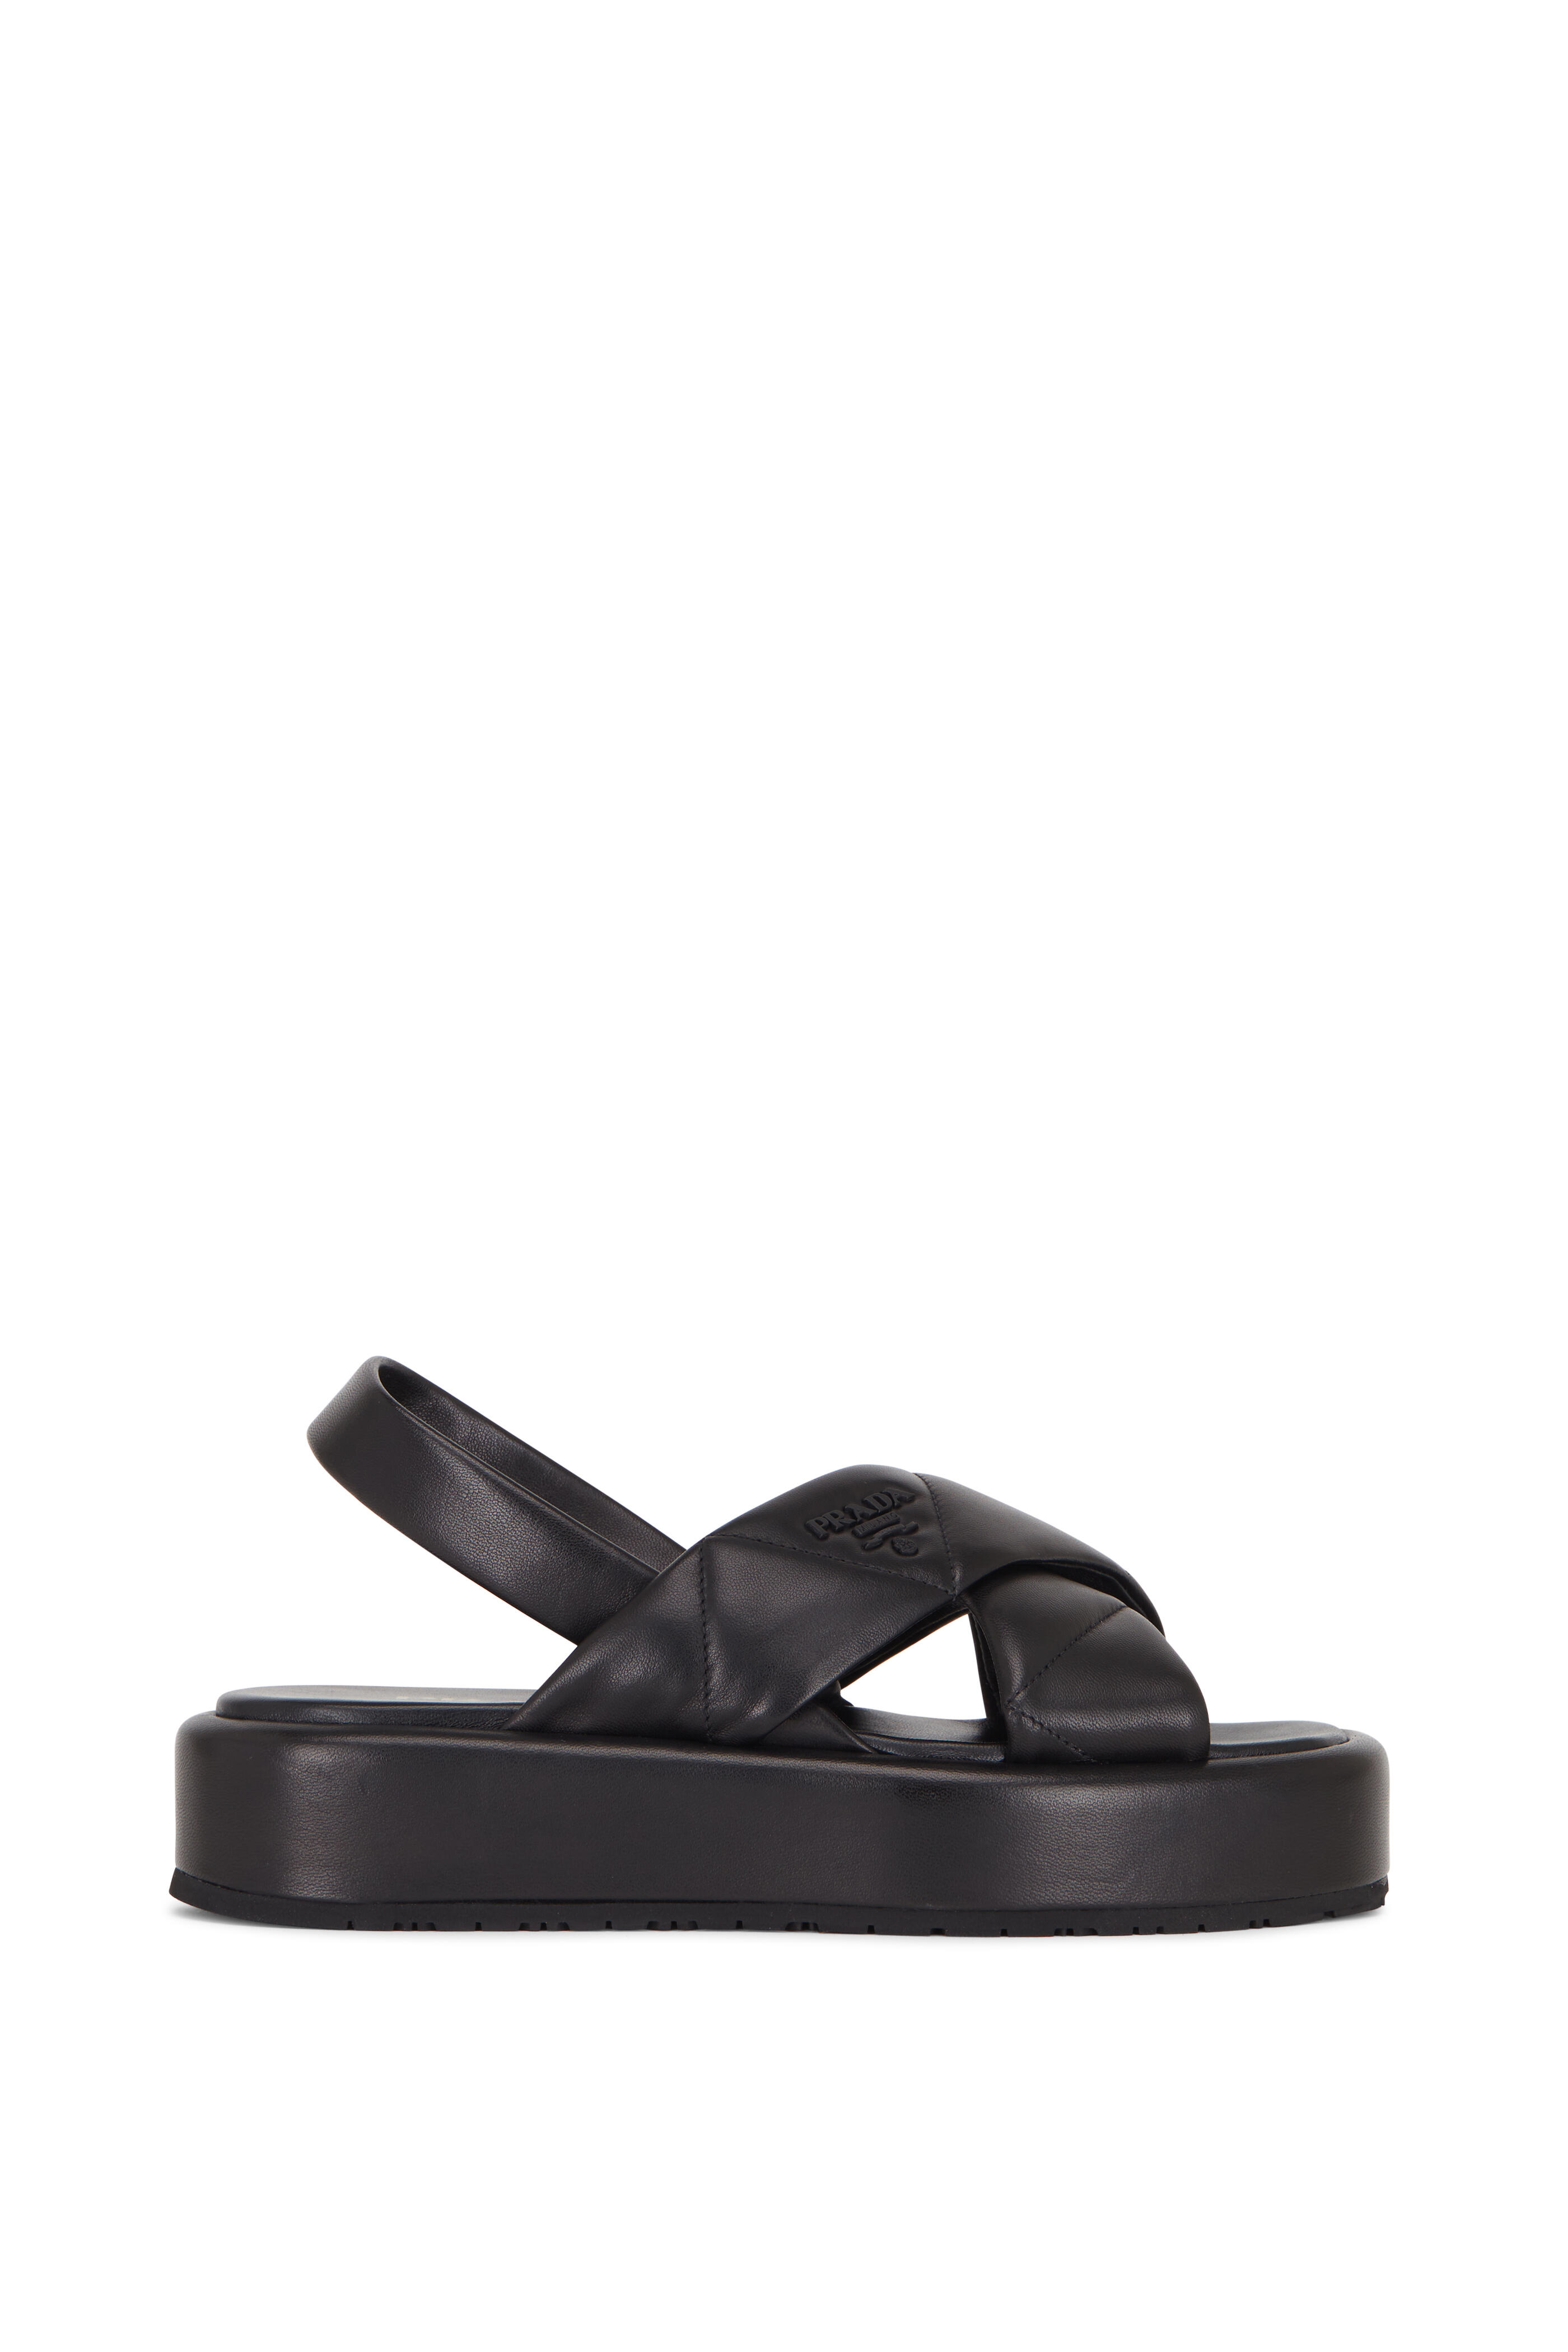 Prada - Black Quilted Leather Flatform Sandal, 35mm